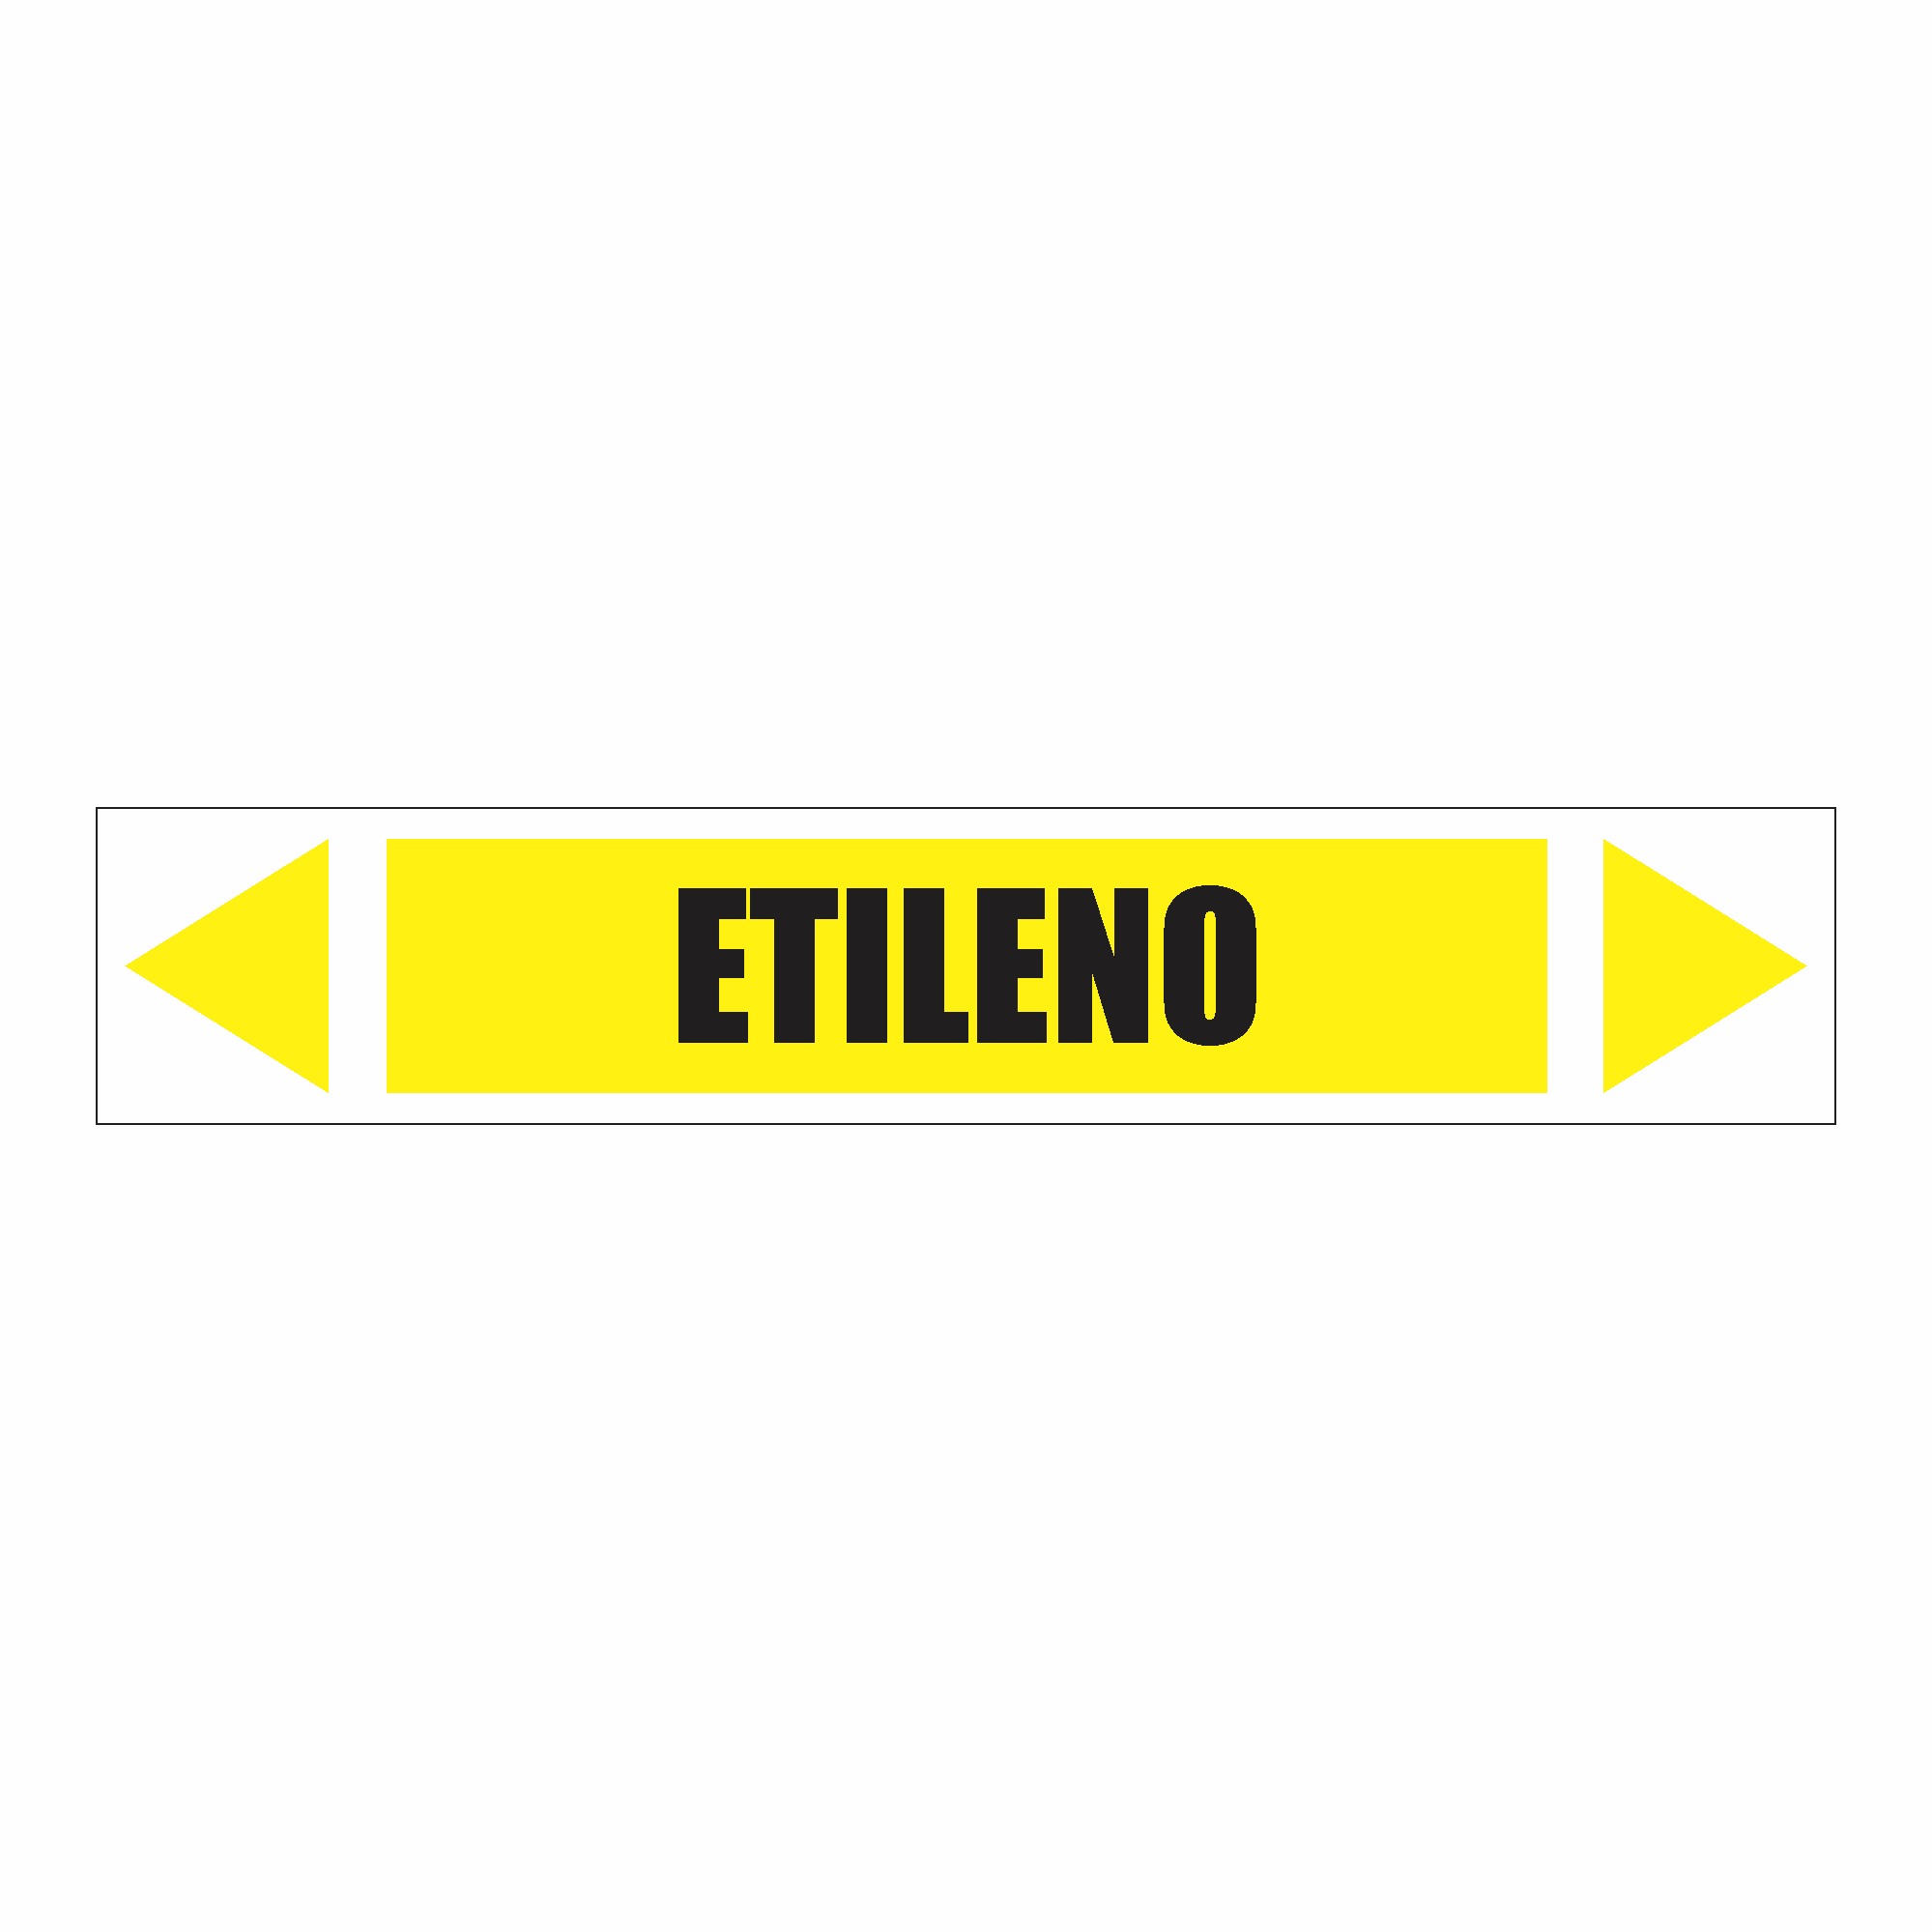 IDT 065 - Etileno